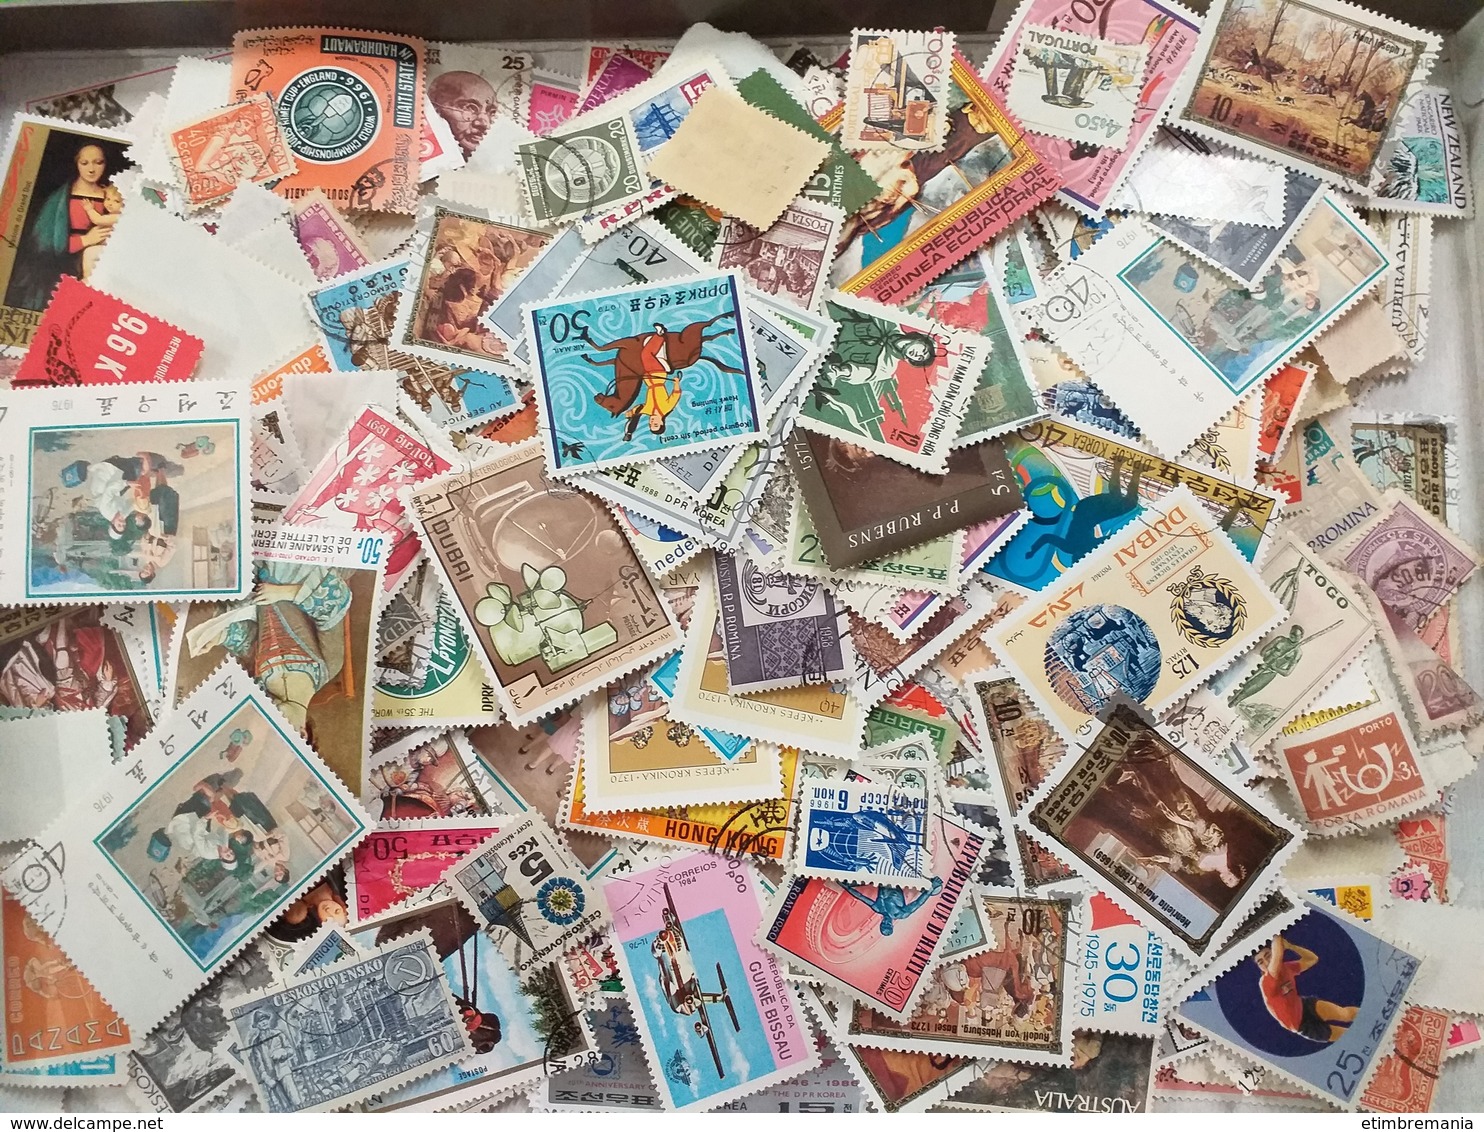 LOT N° e135 un lot de plus de 2000 timbres du monde